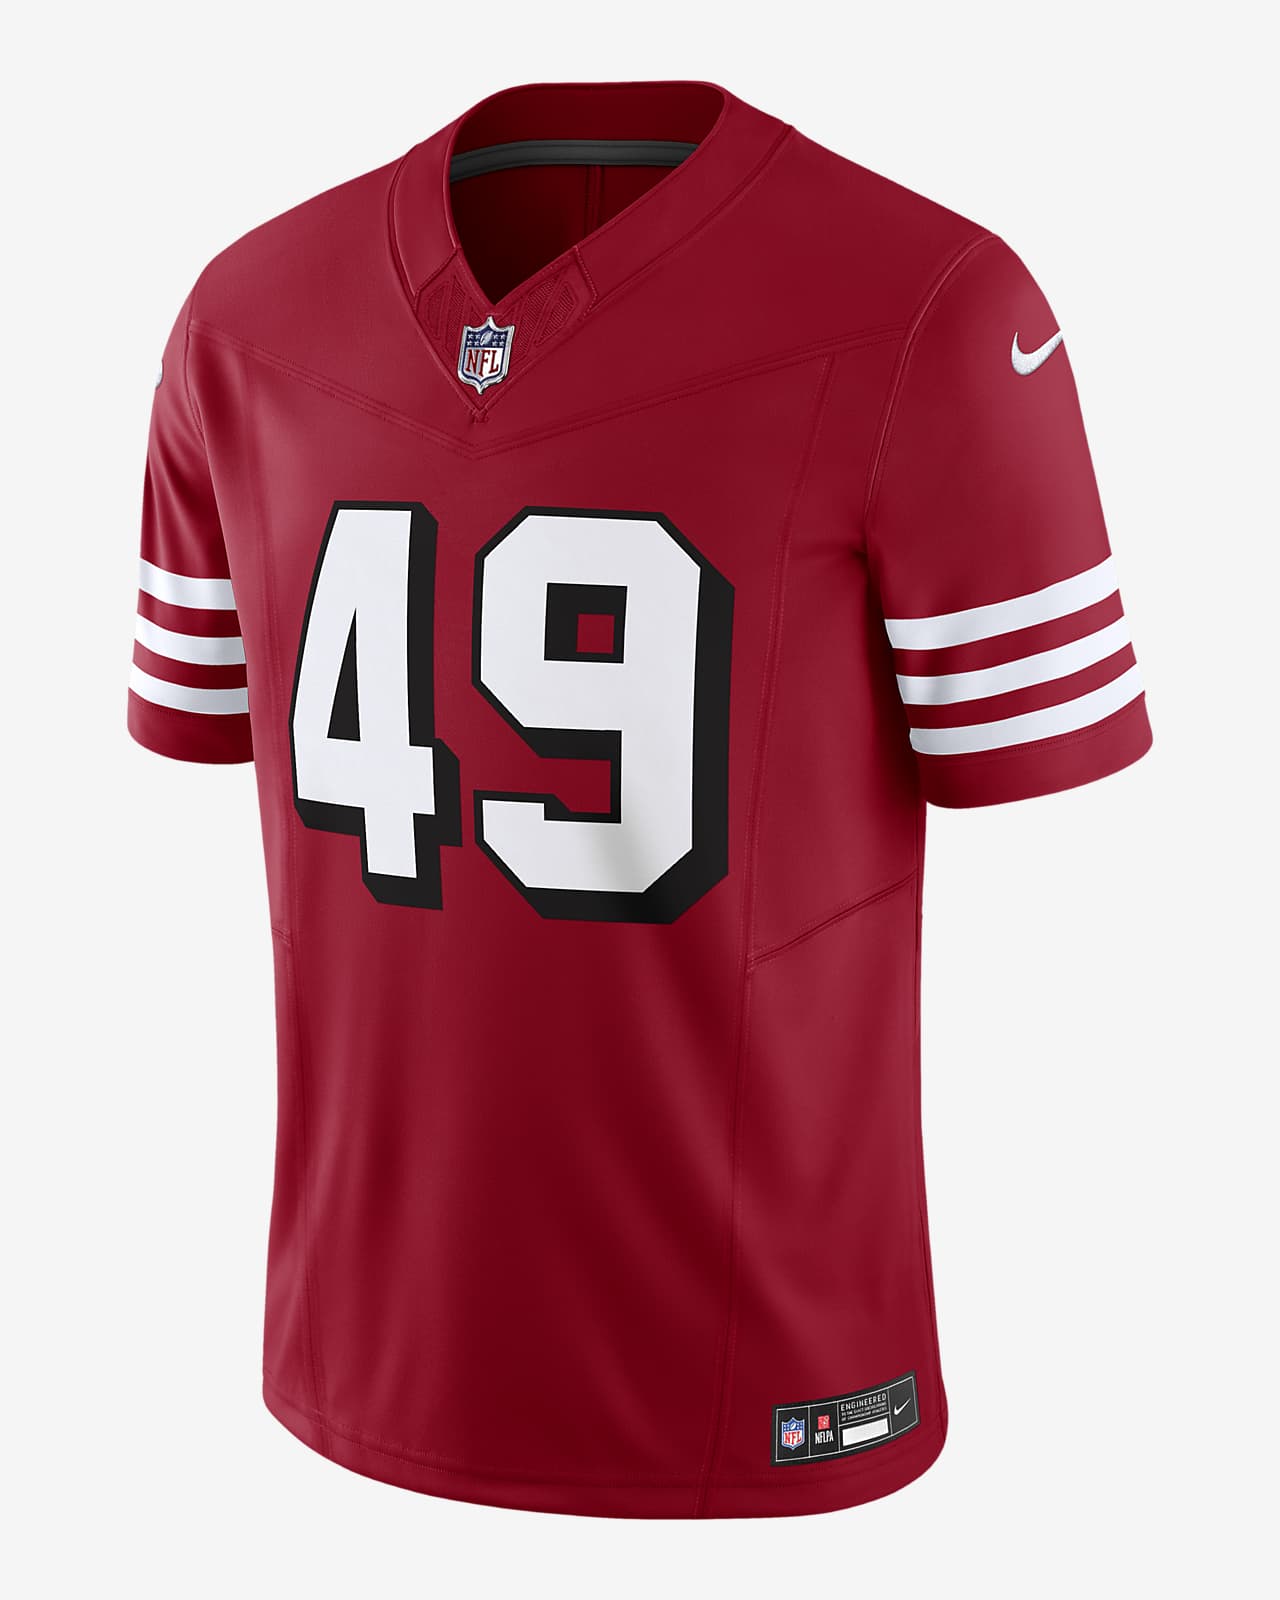 a 49ers jersey